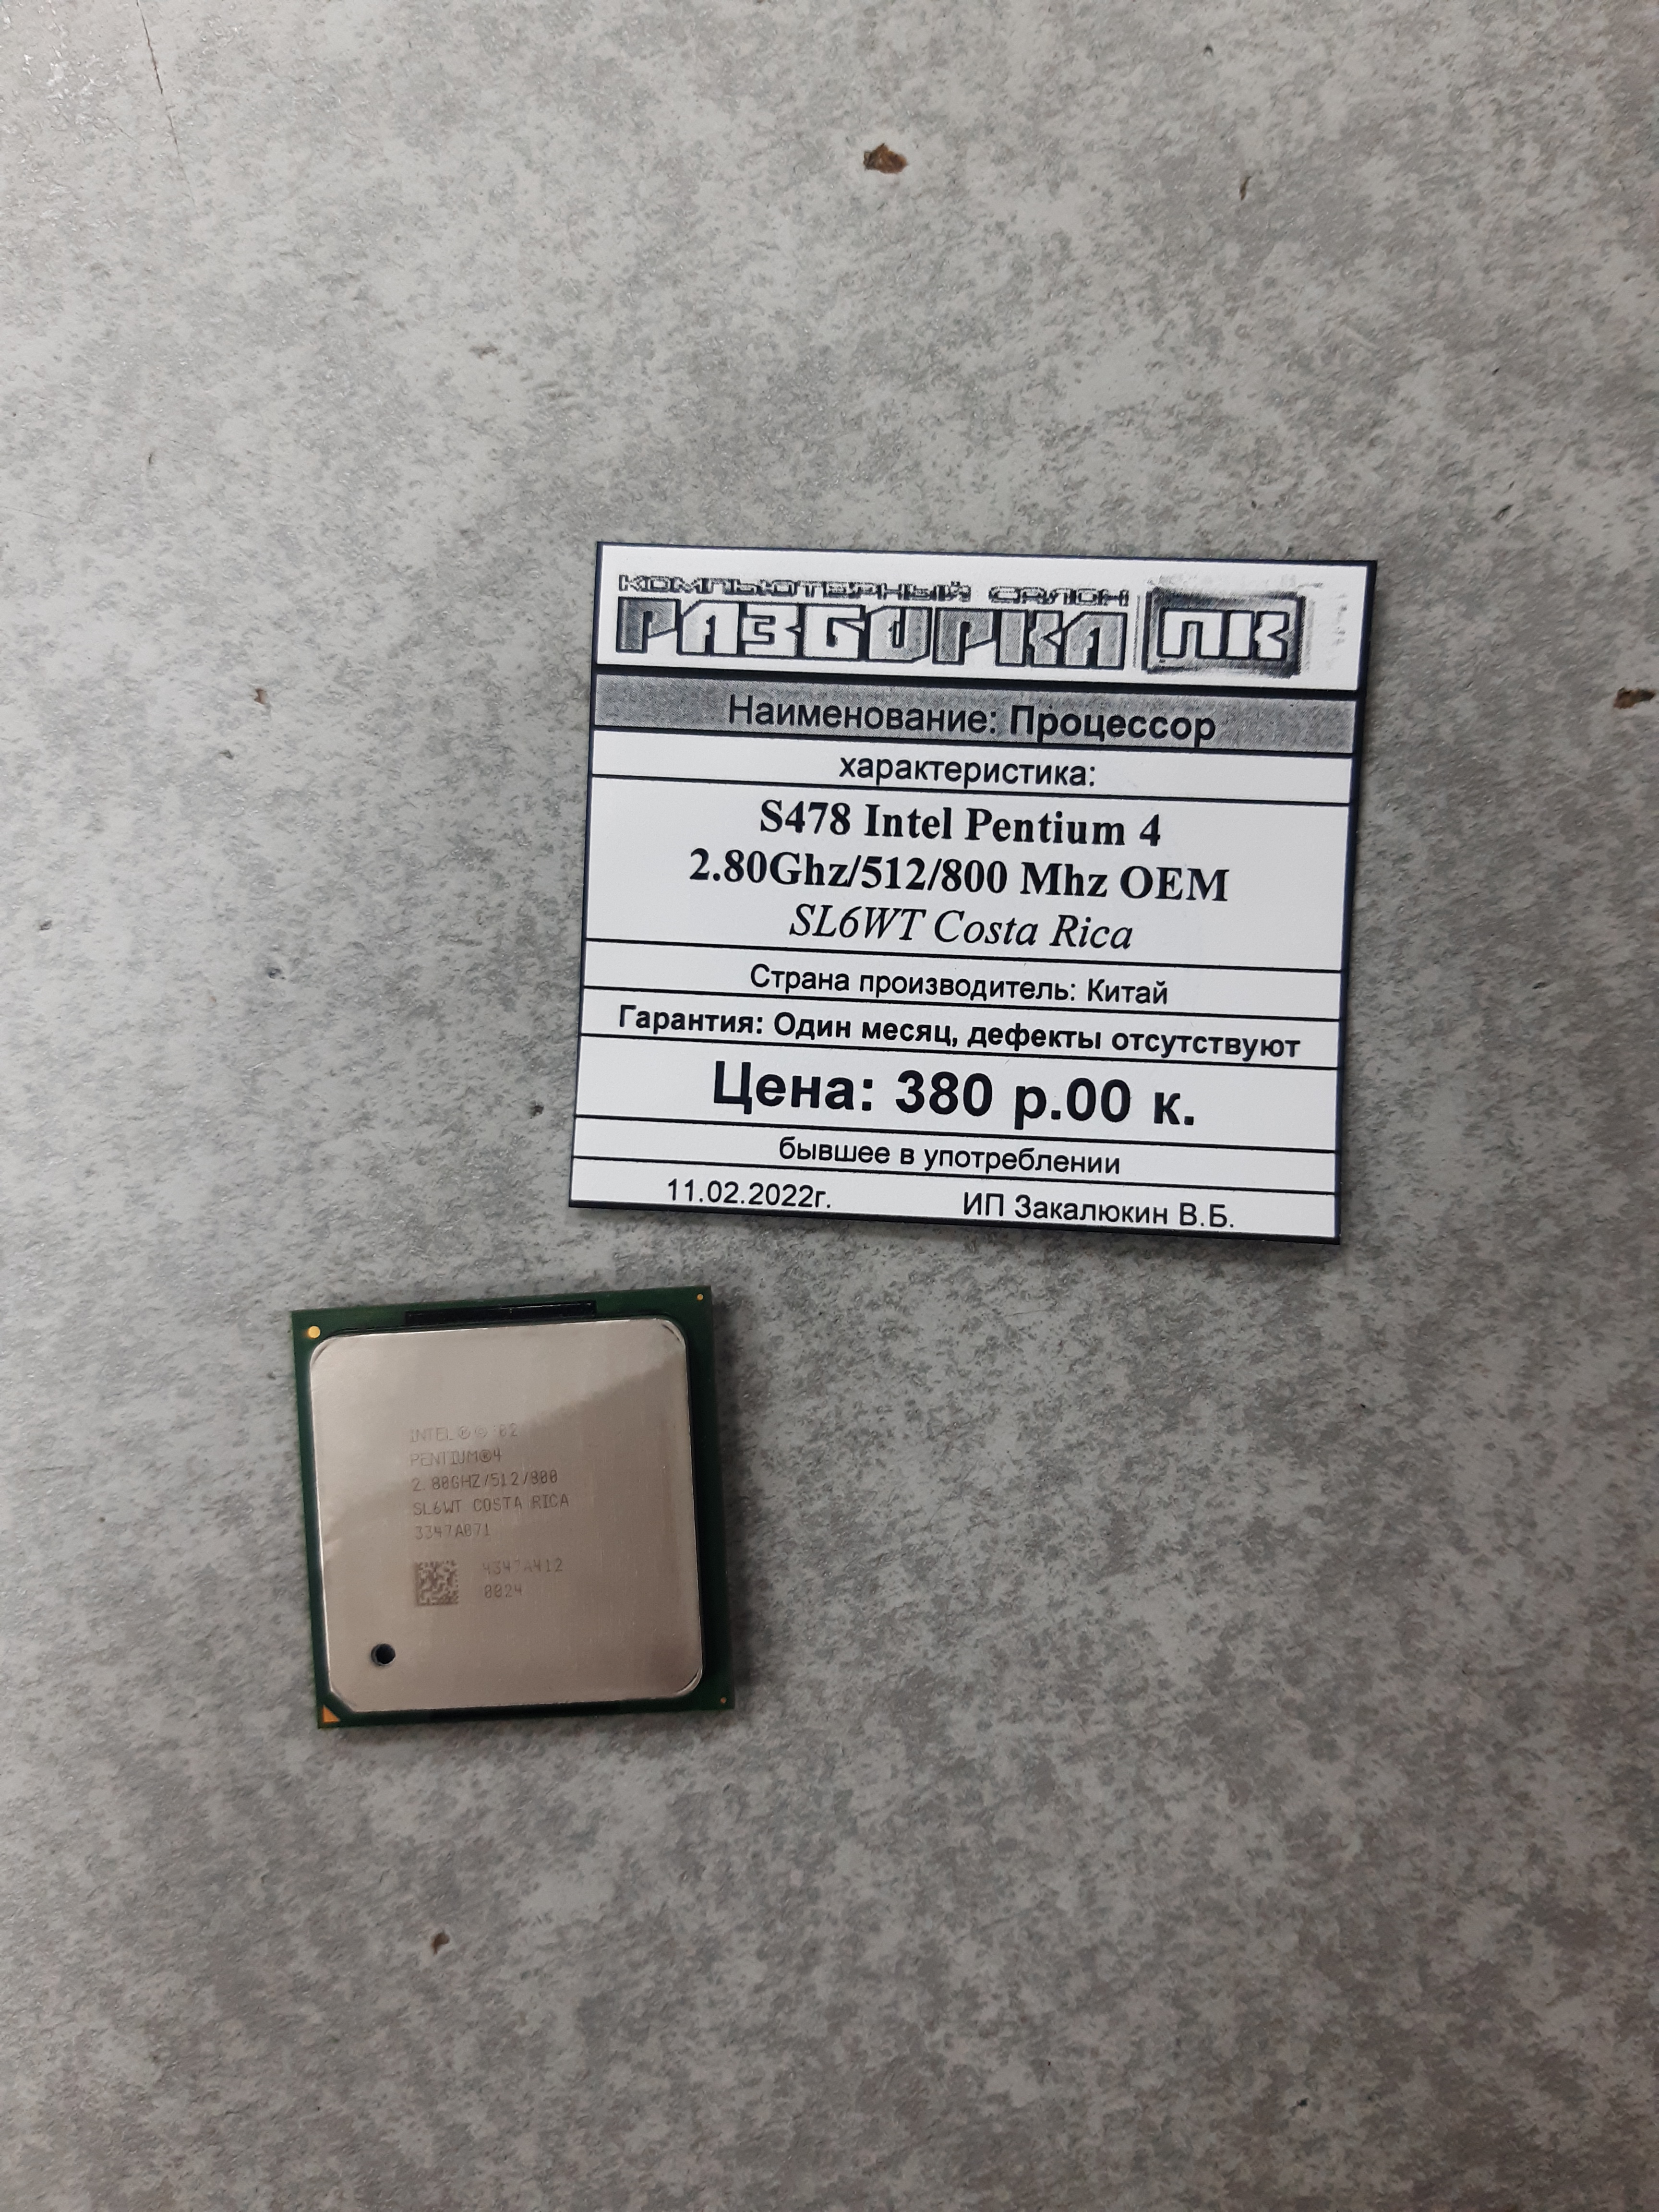 Процессор S478 Intel Pentium 4 2.80Ghz/512/800 Mhz